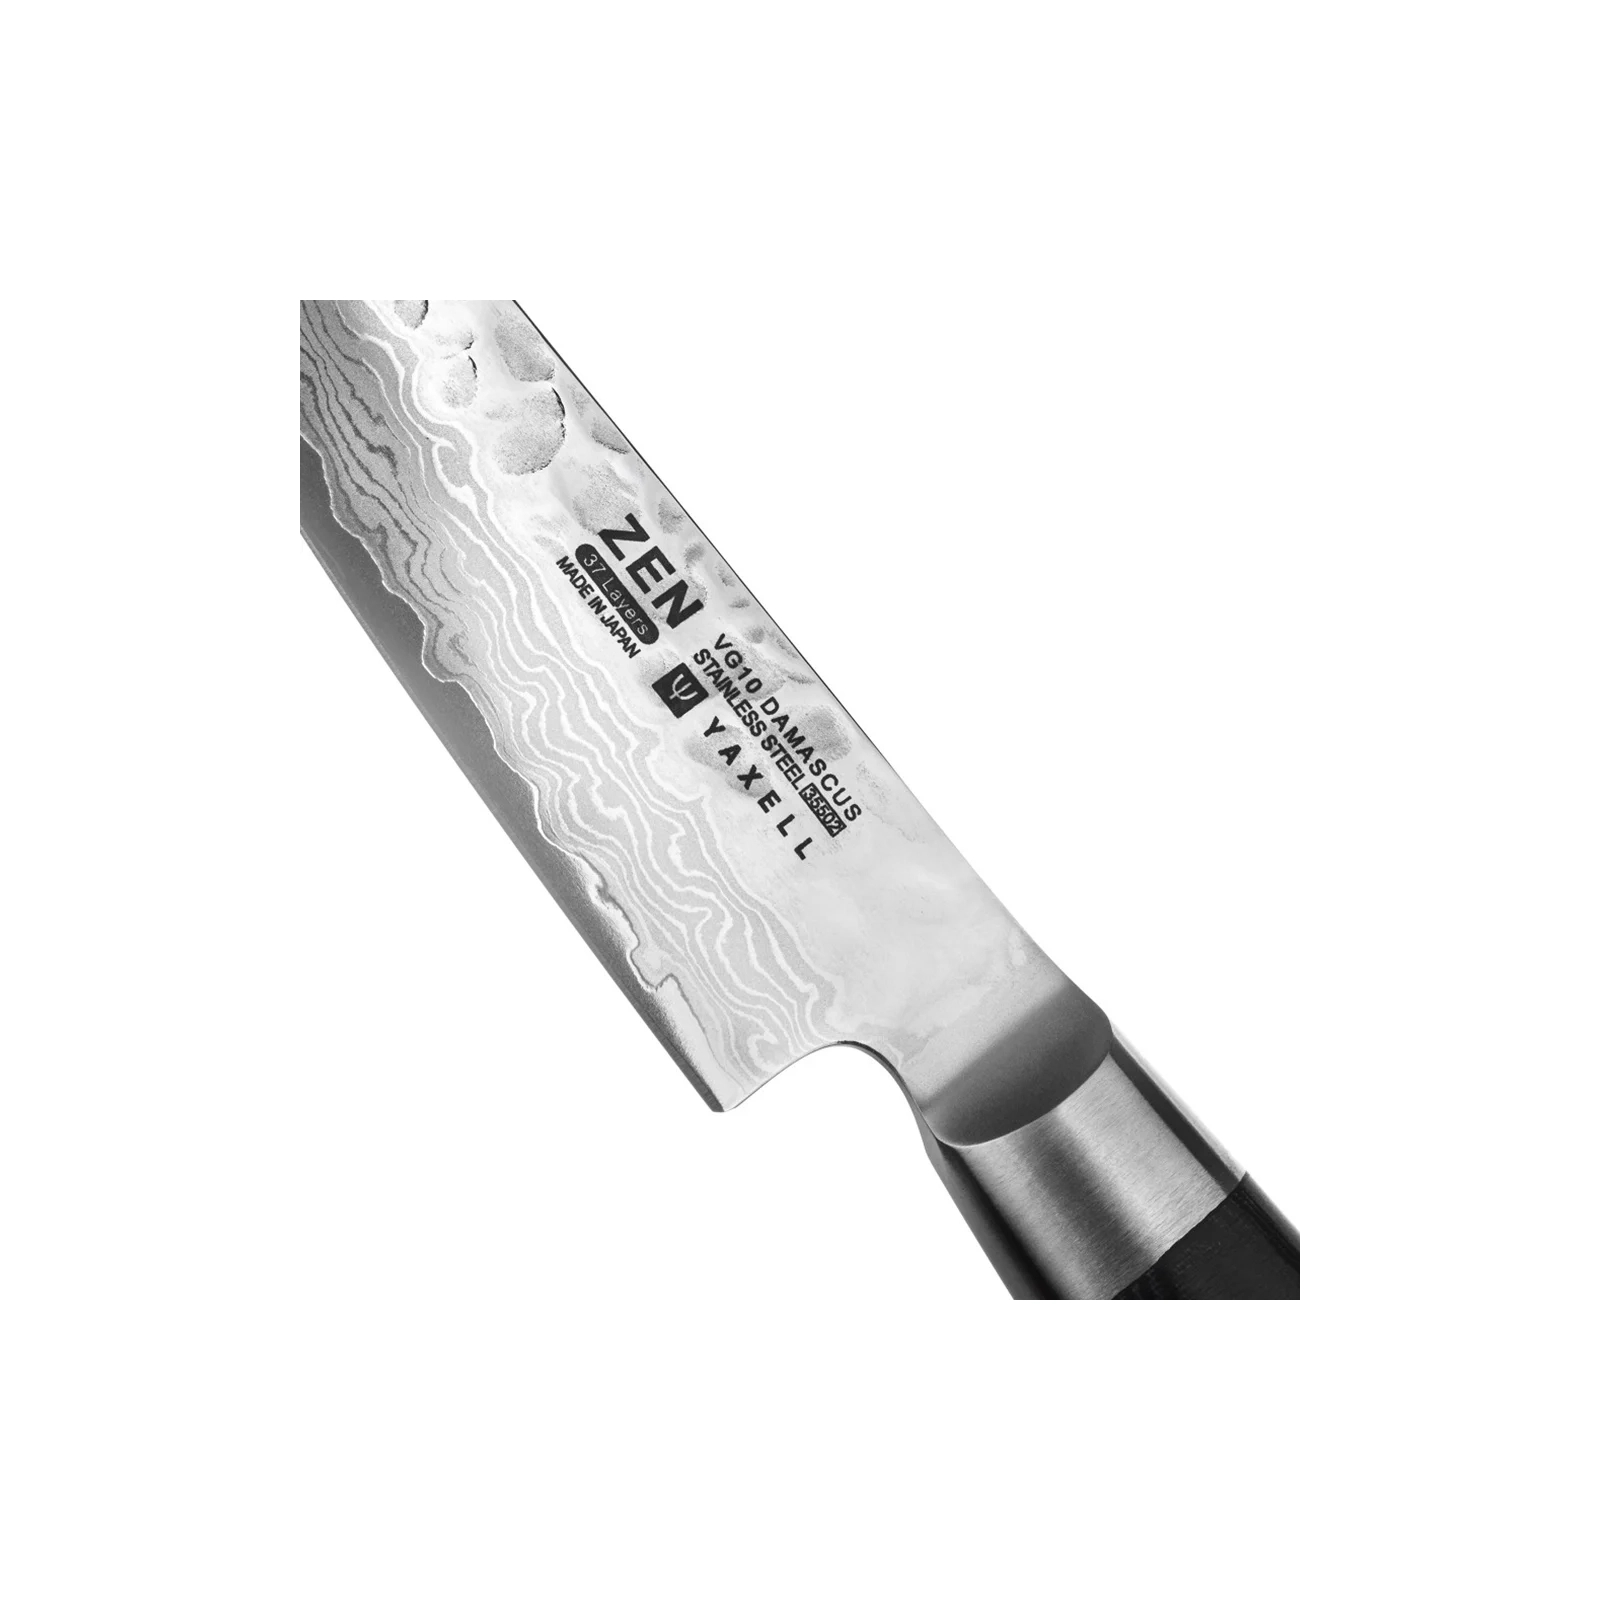 Кухонный нож Yaxell кухарський 120 мм серія Zen (35502) изображение 2